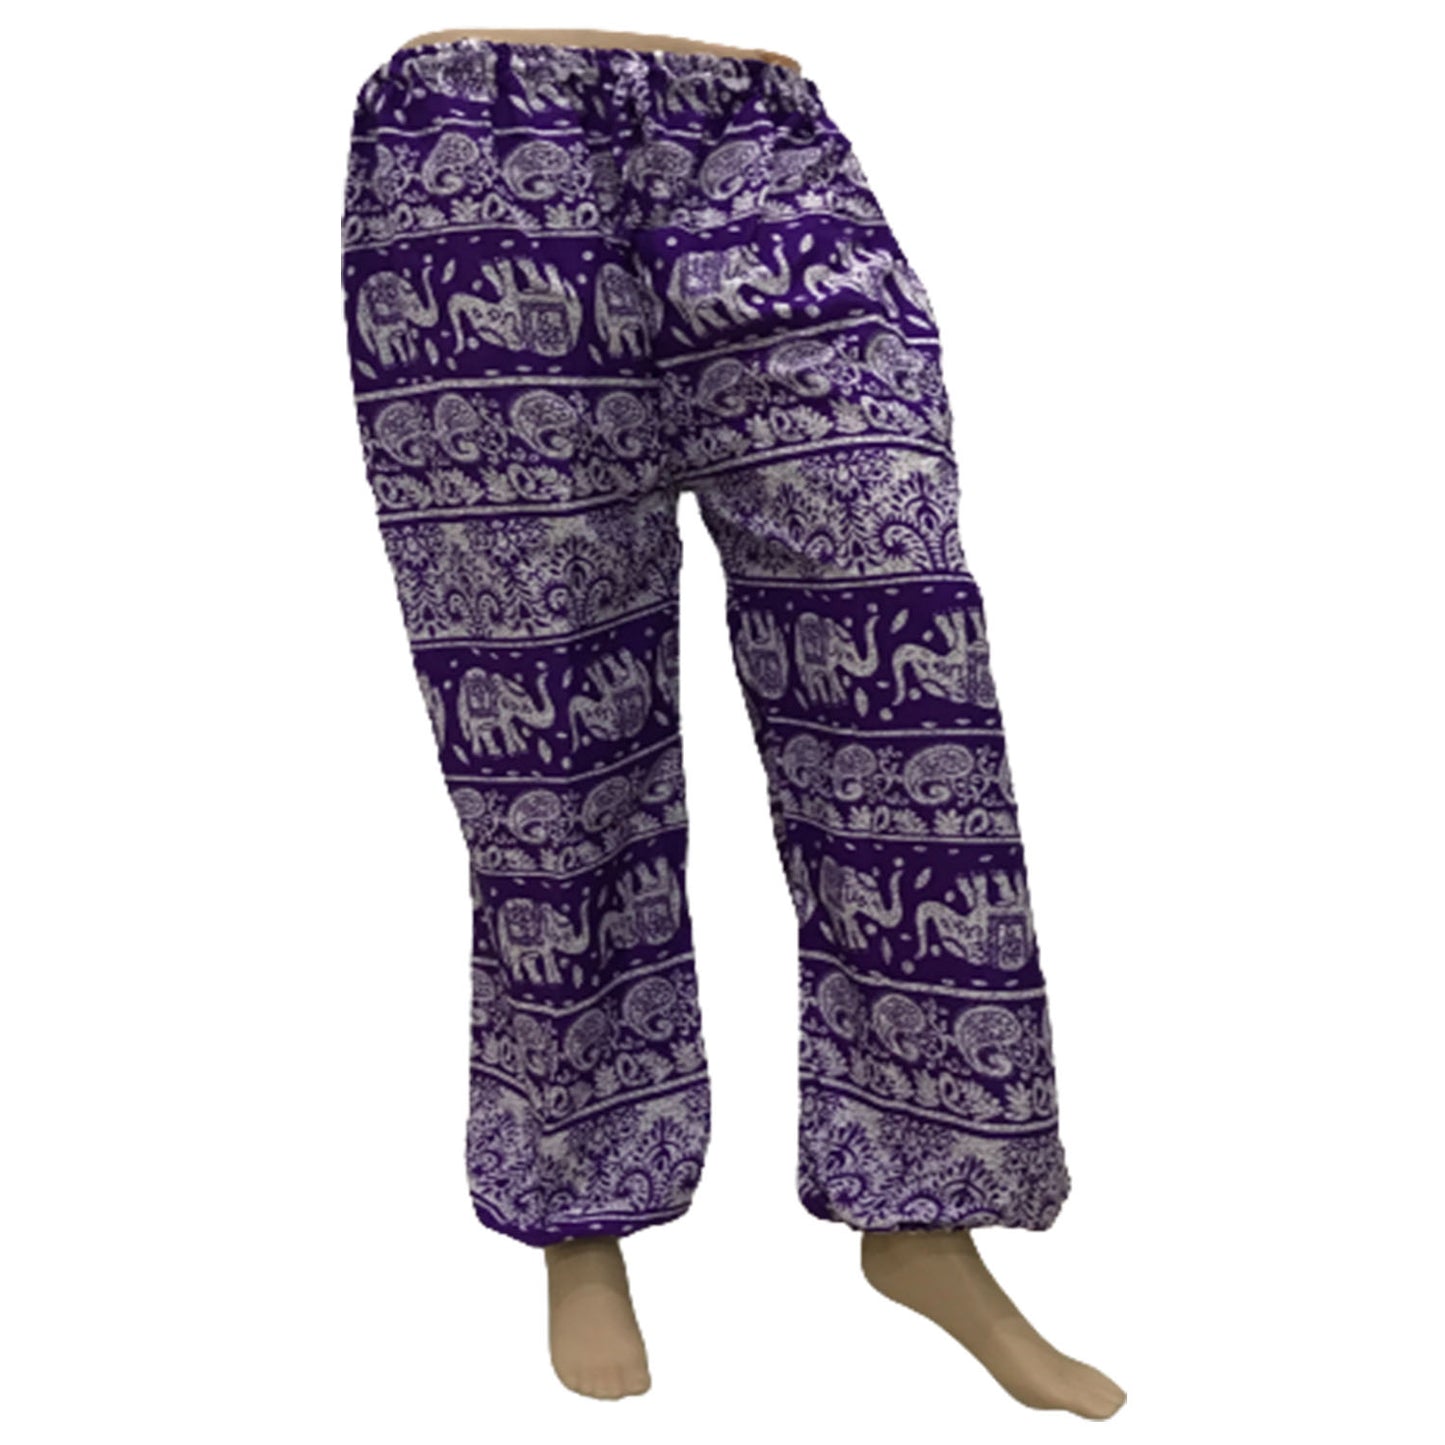 Ganesha Handicrafts, Comfy Cuffed Elephant Print Trousers, Elephant Print Trousers, Comfy Cuffed Trousers, Trending Trousers, Purple Trousers.